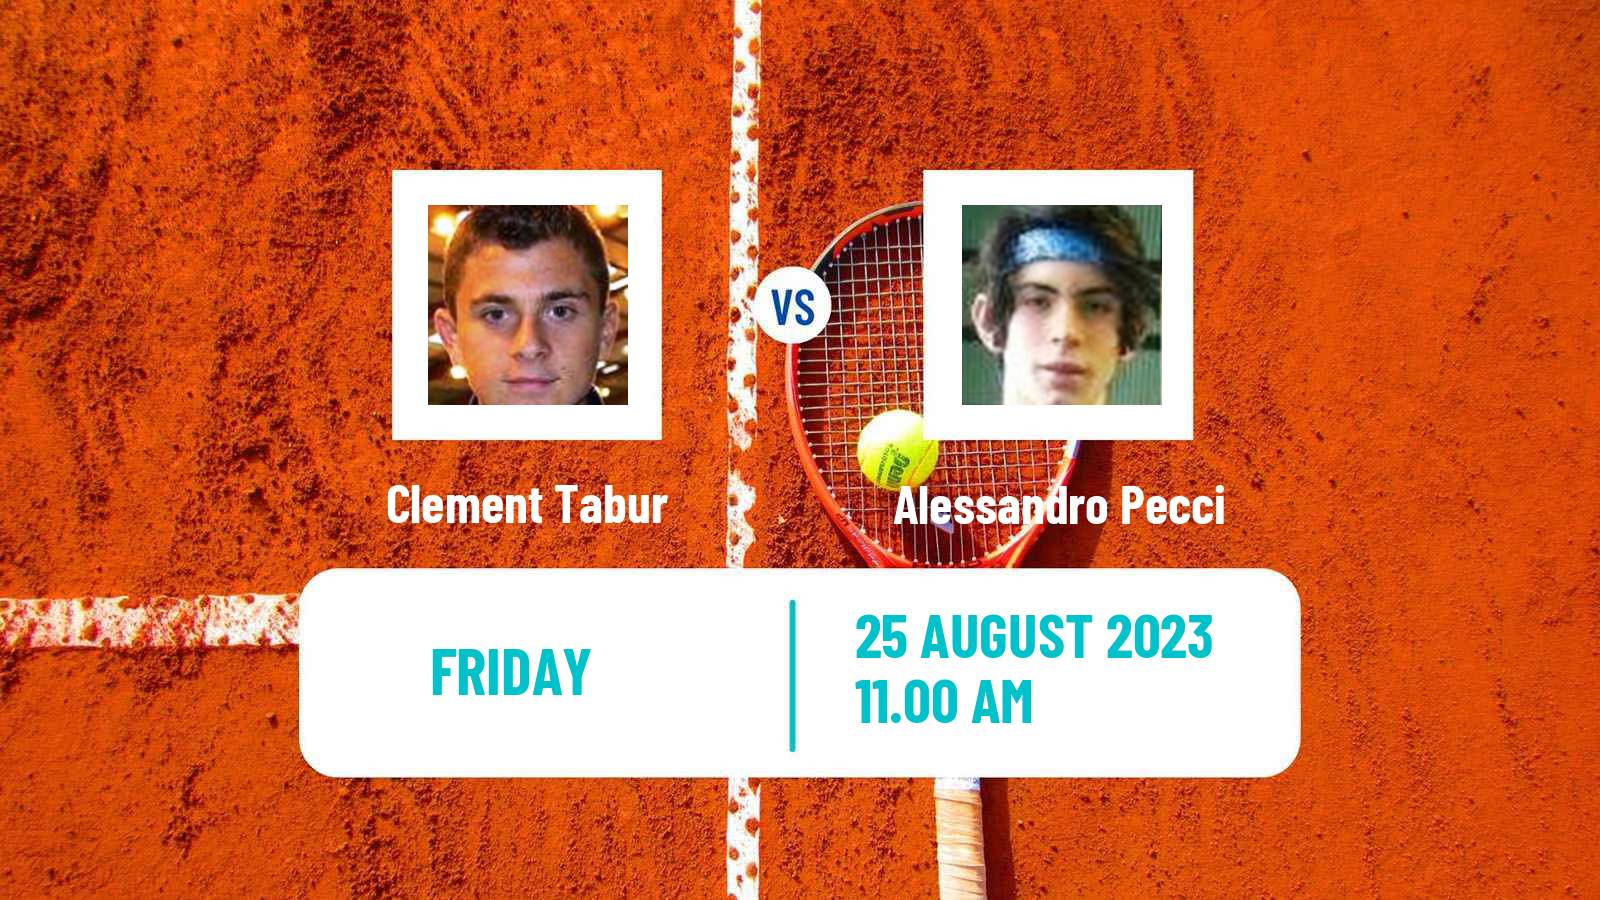 Tennis ITF M25 Lesa Men Clement Tabur - Alessandro Pecci